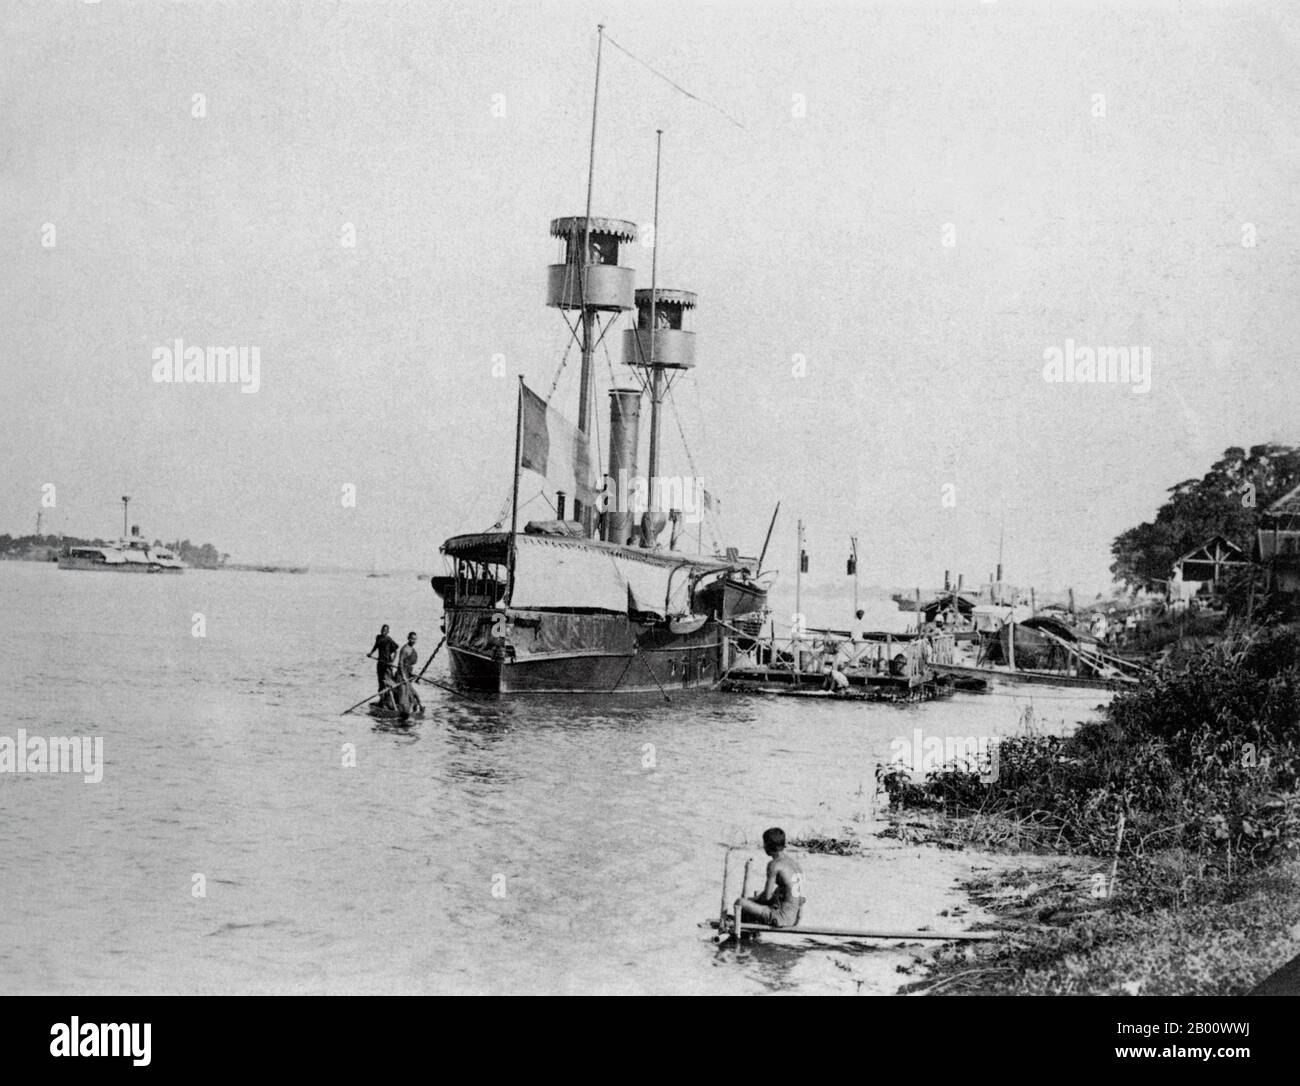 Kambodscha: Ein französisches Kanonenboot, das 1890 auf dem Mekong in Phnom Penh festgemacht wurde. Zwei buddhistische Mönche rudern auf einem Sampan am Bogen vorbei. Am Ufer des Tonle SAP, Mekong und Bassac gelegen, ist Phnom Penh ein idealer Standort für ein Handelszentrum und Hauptstadt. Es ist heute die Heimat von mehr als 2 Millionen der 14 Millionen Einwohner Kambodschas. Phnom Penh wurde zuerst die Hauptstadt von Kambodscha, nachdem Ponhea Yat, der letzte König des Khmer-Reiches, gezwungen wurde, Angkor Thom zu fliehen, nachdem es von der siamesischen Armee im Jahr 1393 erobert wurde. Phnom Penh blieb die königliche Hauptstadt, bis sie 1505 aufgegeben wurde. Stockfoto